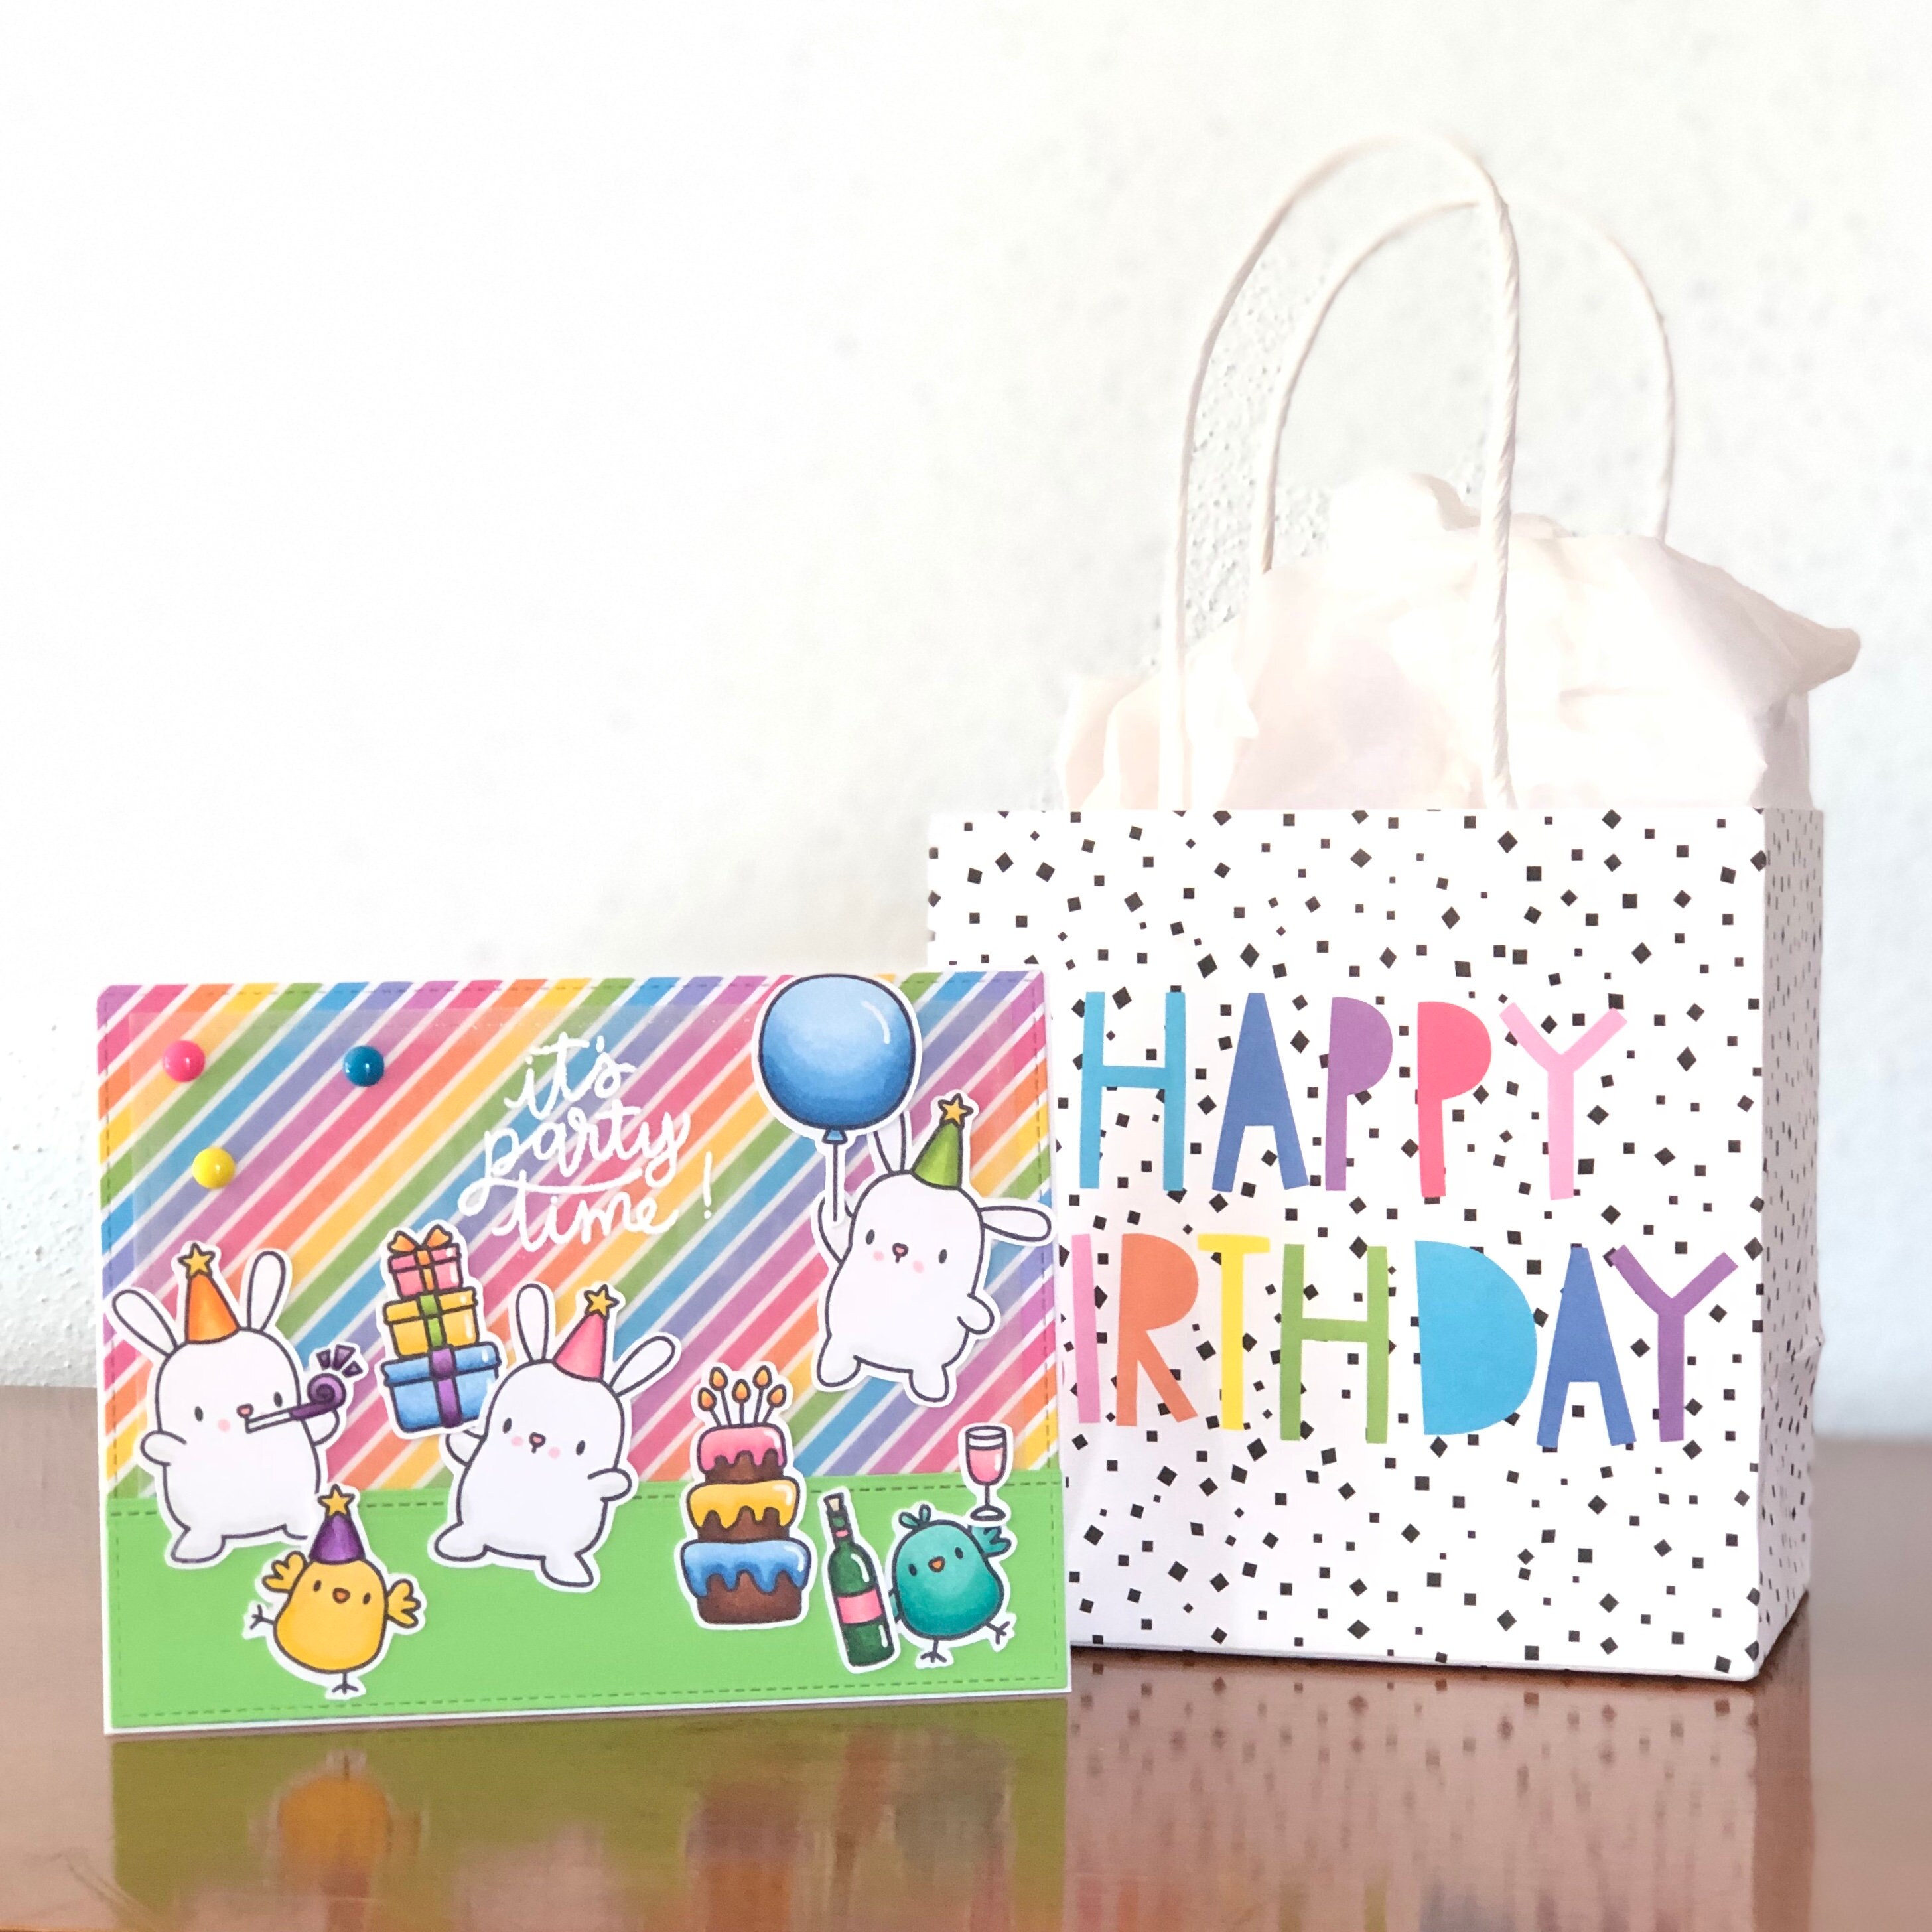 Bunny Birthday Card Rabbit Birthday Card Fun Birthday Card | Etsy